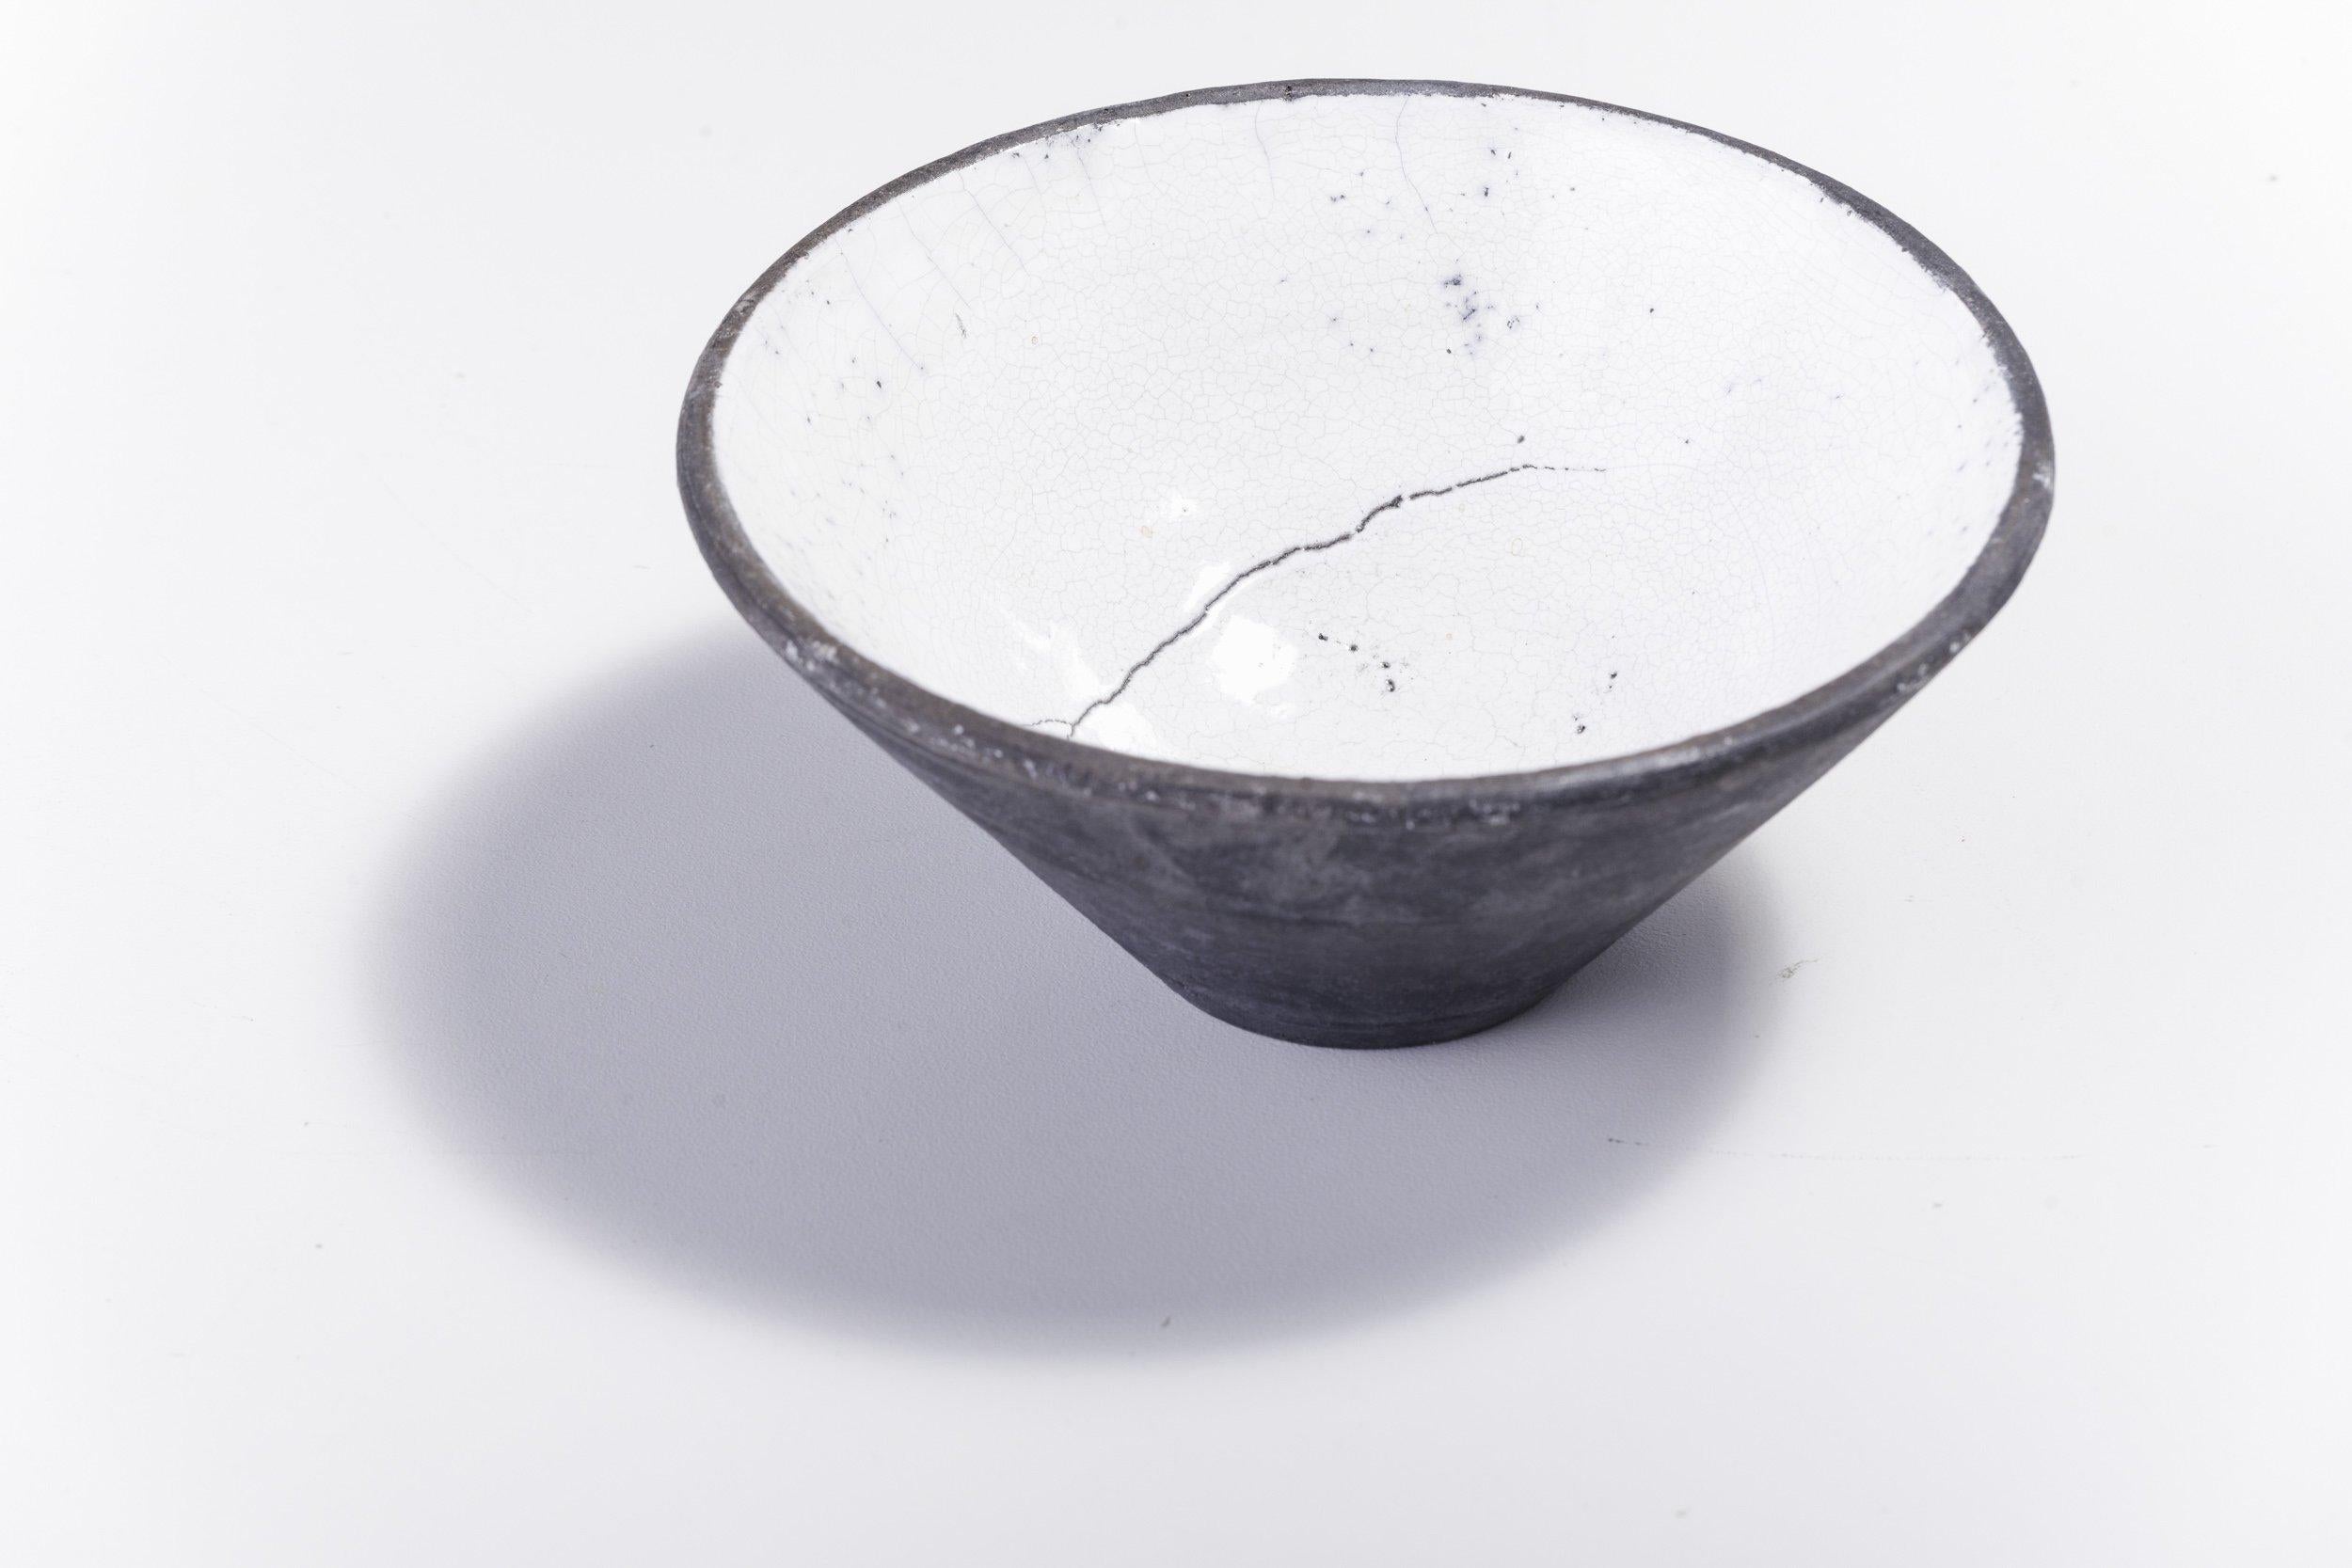 Bol Wu

Caractérisé par un caractère brut séduisant, ce magnifique bol en céramique est habilement fabriqué à la main selon la technique japonaise Raku qui crée des objets uniques décorés naturellement. Cette pièce présente une forme conique qui